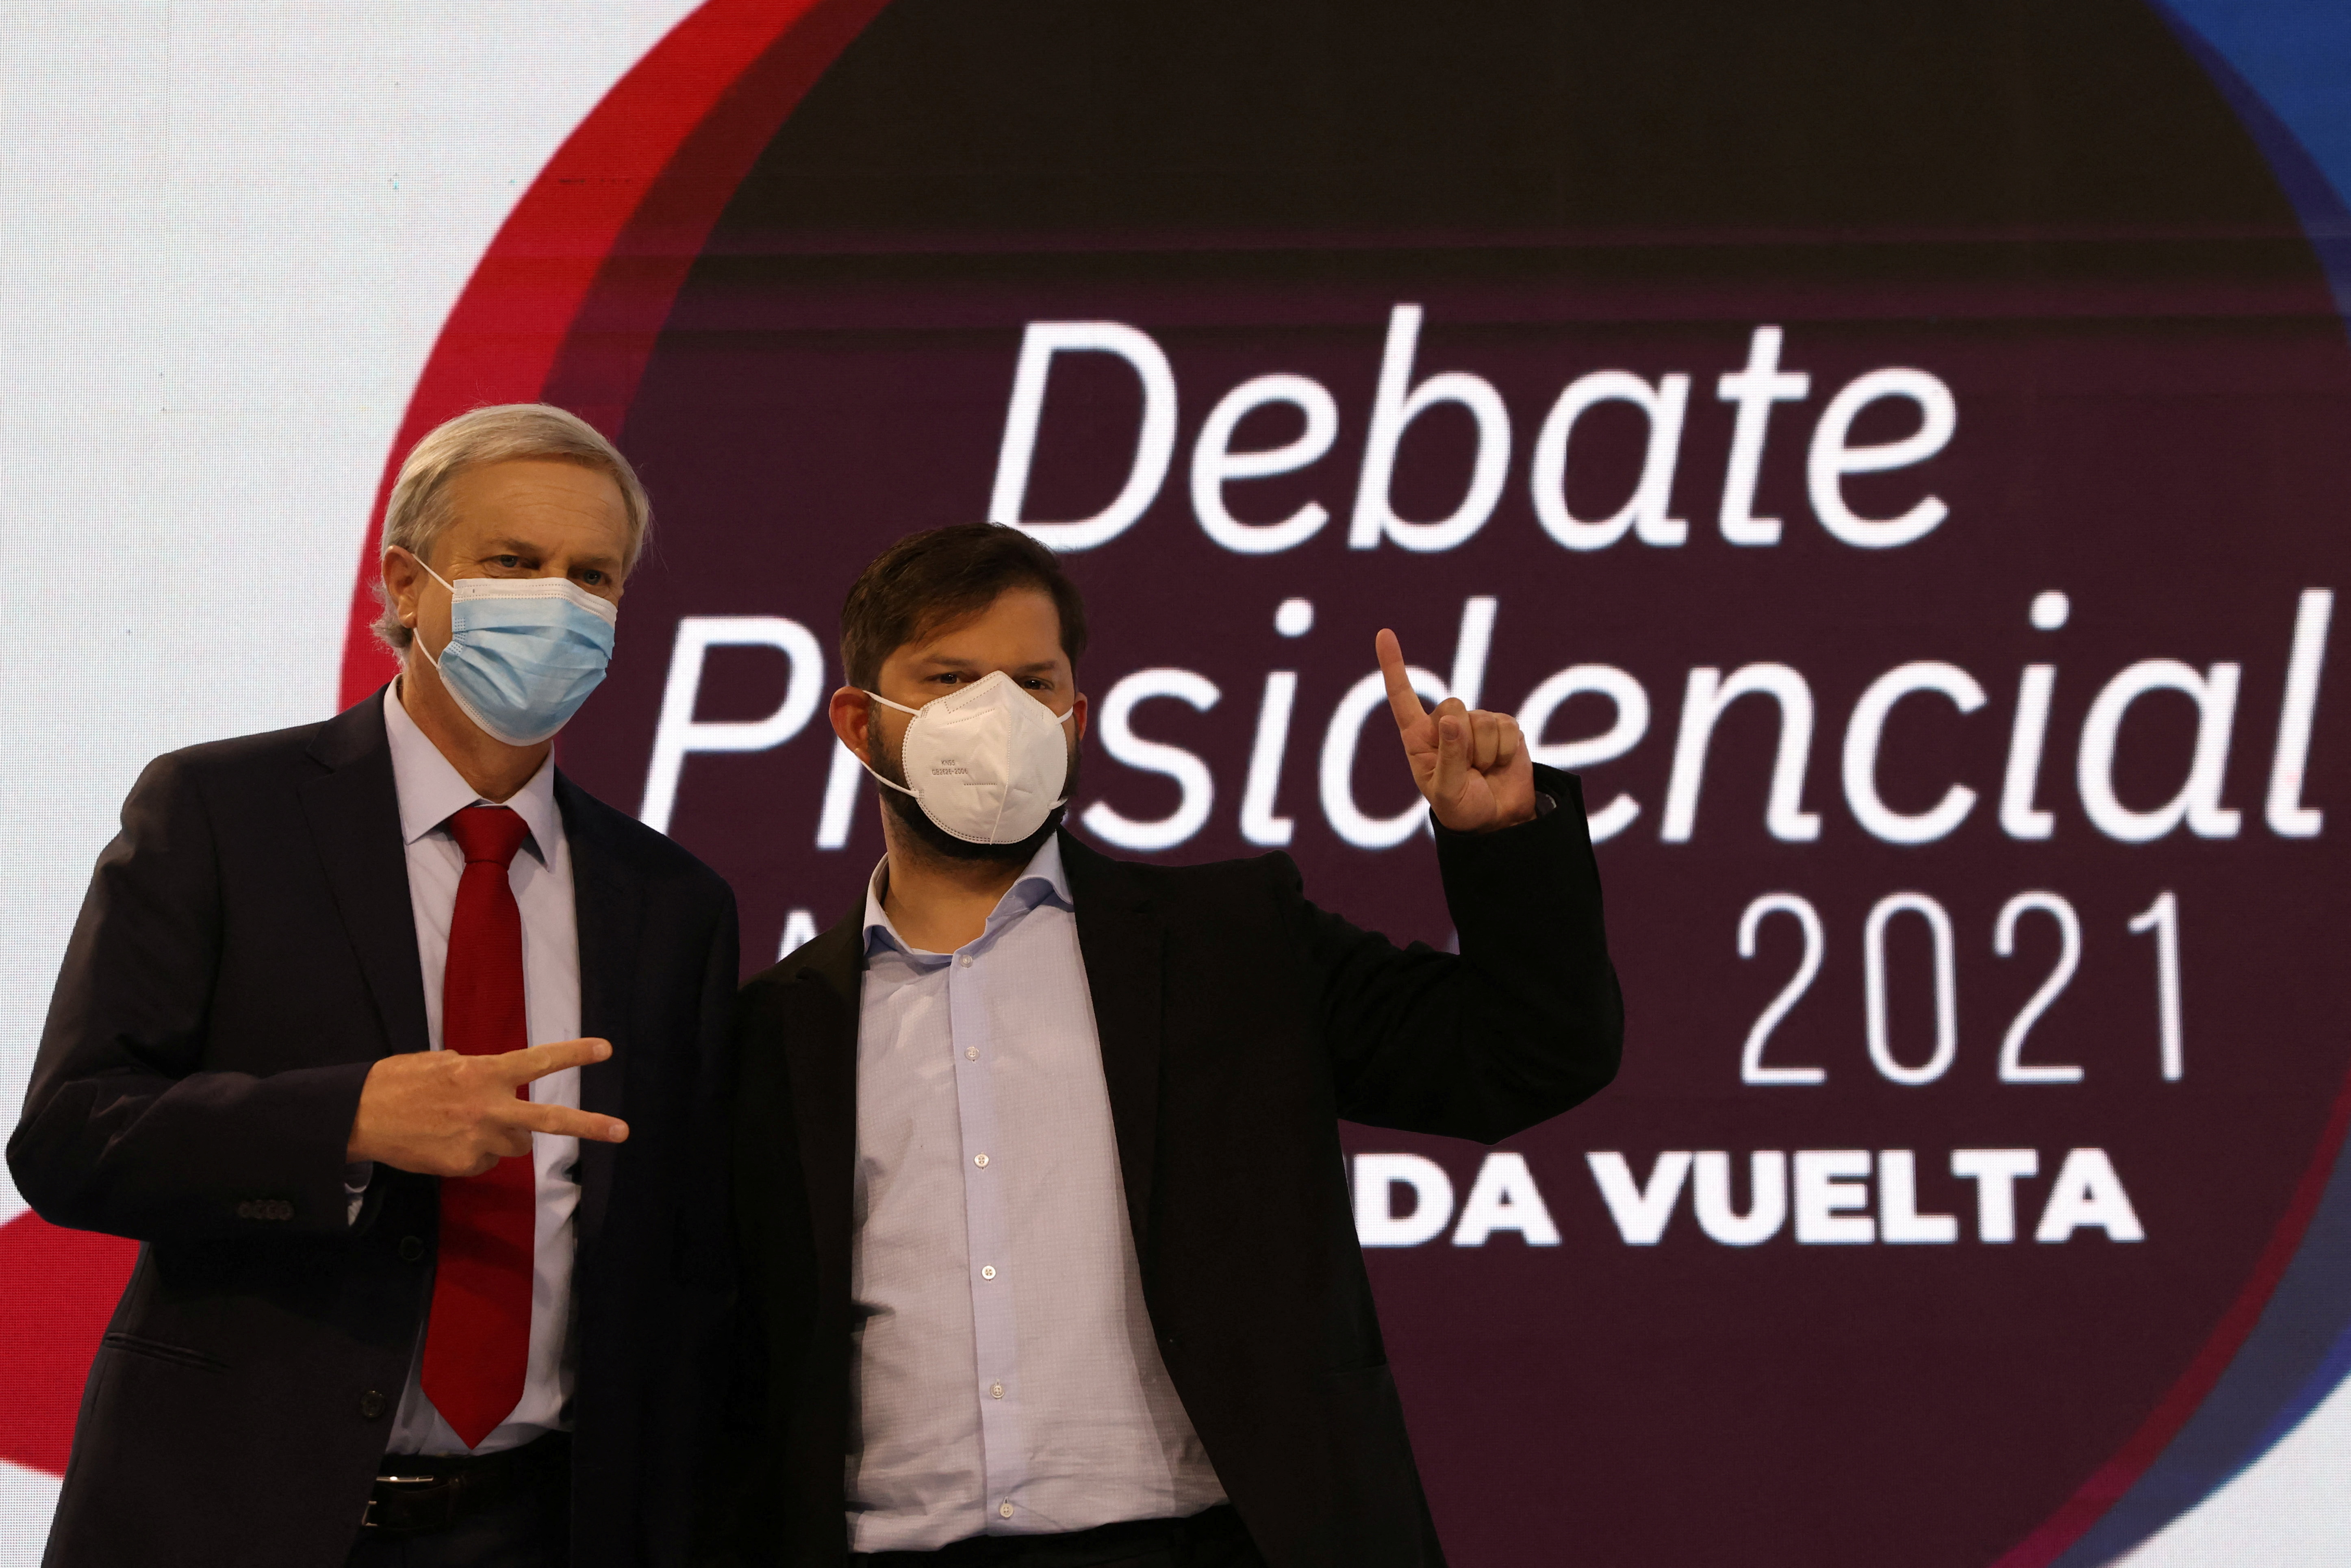 Los candidatos, Kast y Boric, entre los que se definirá al próximo presidente de Chile